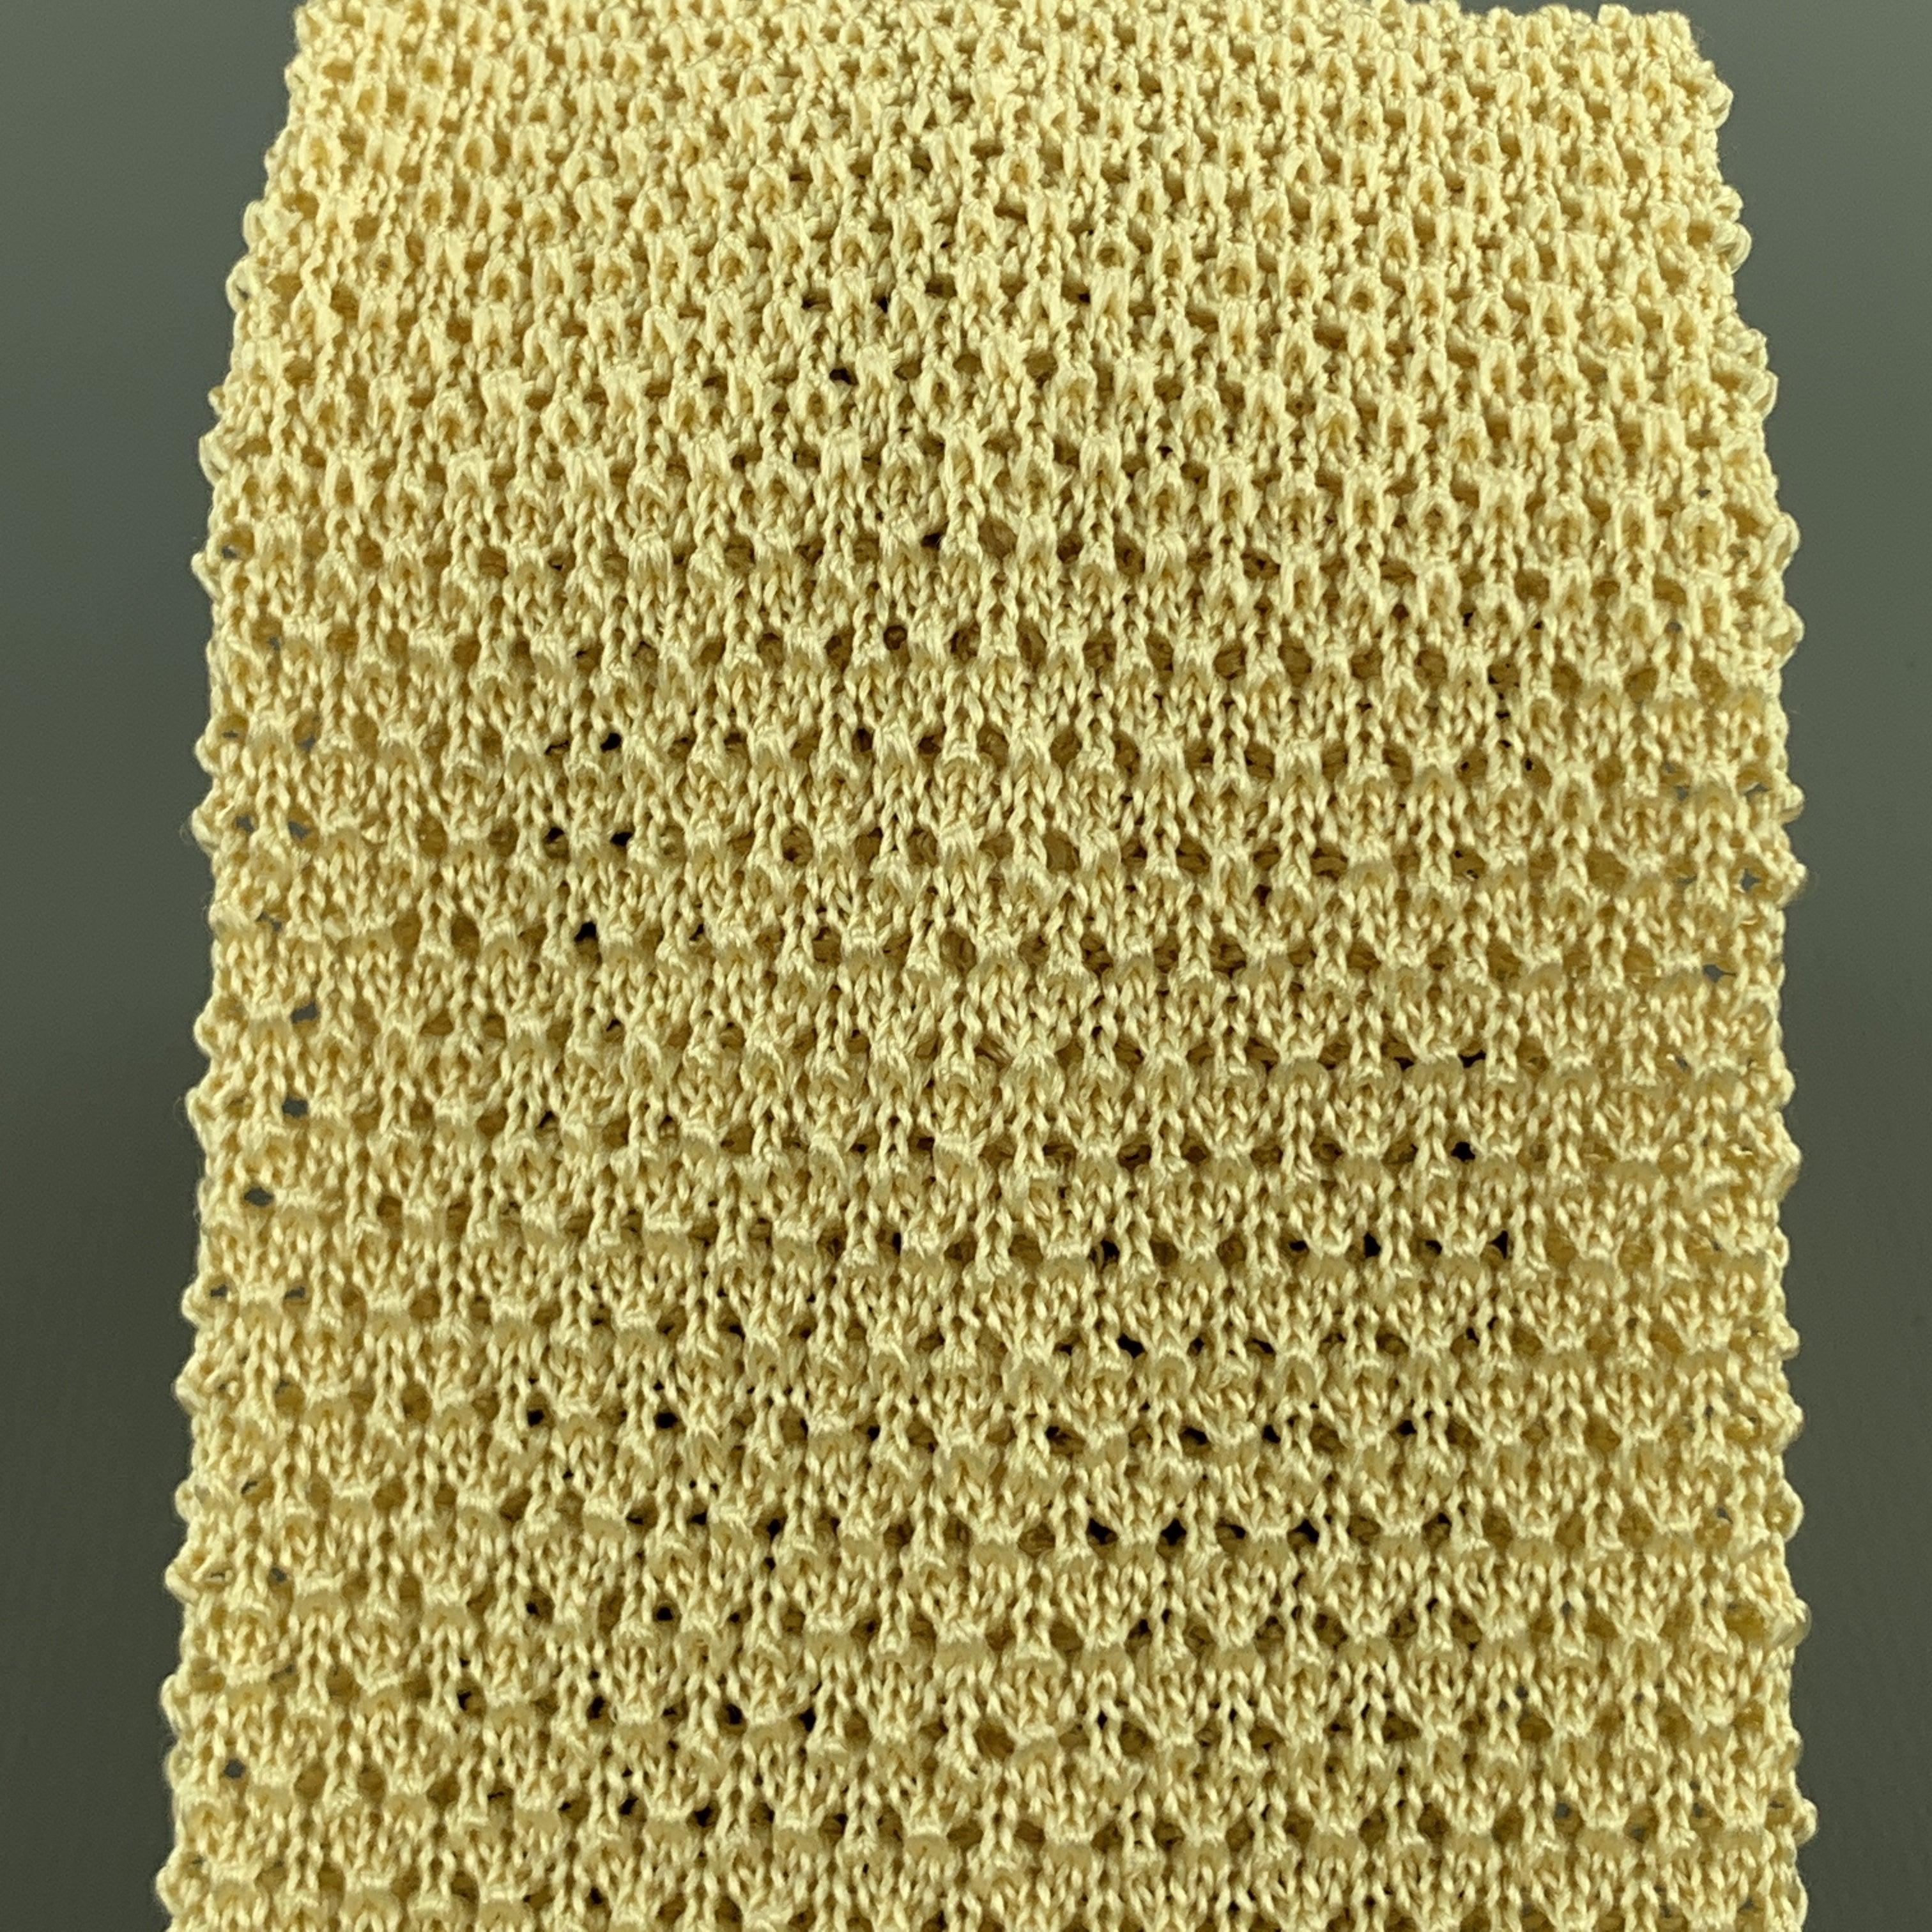 La cravate TURNBULL & ASSER se présente sous la forme d'un tricot de soie texturé avec une pointe carrée. Fabriqué en Italie.Excellent état d'occasion.Largeur : 3 pouces   
  
  
 
Référence Sui Generis : 102184
Catégorie : Cravate
Plus de détails
 